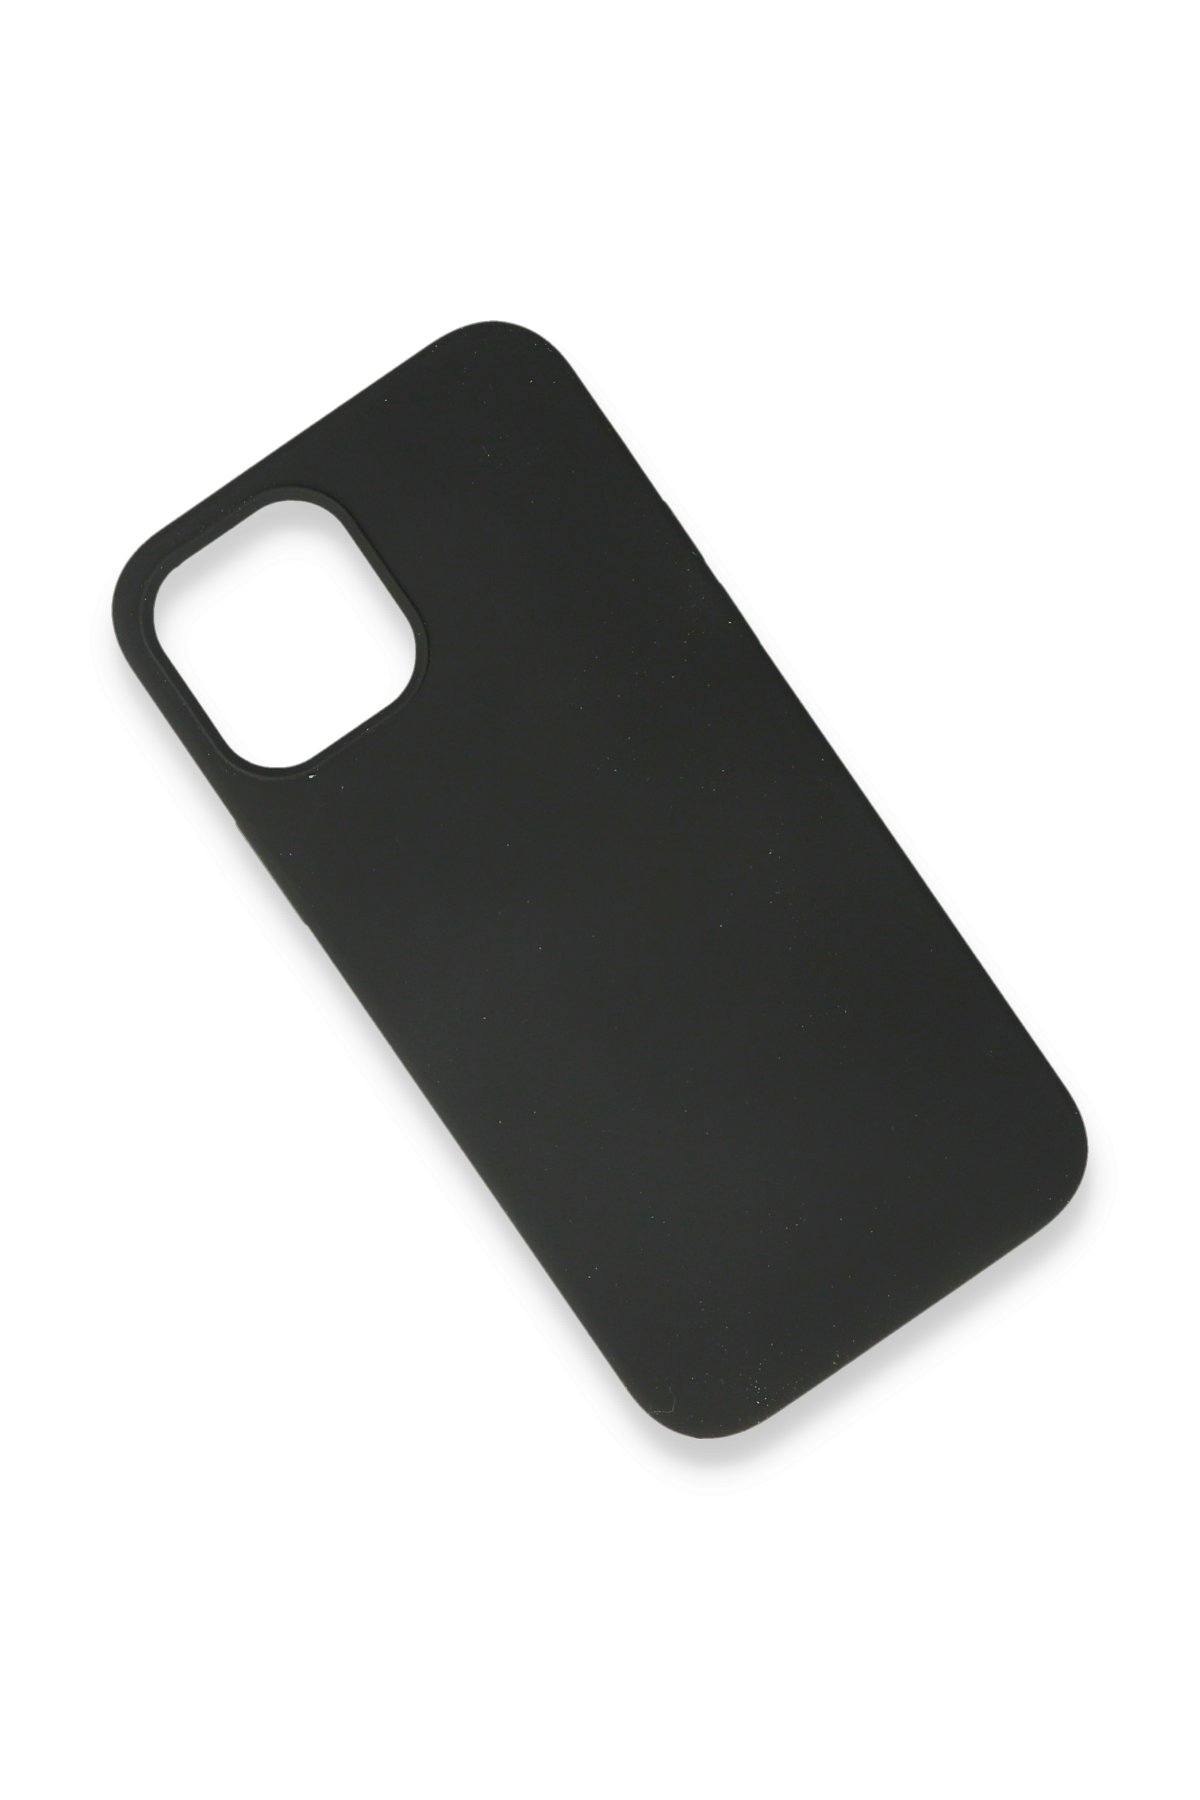 Newface iPhone 12 Mini Kılıf Montreal Yüzüklü Silikon Kapak - Sarı